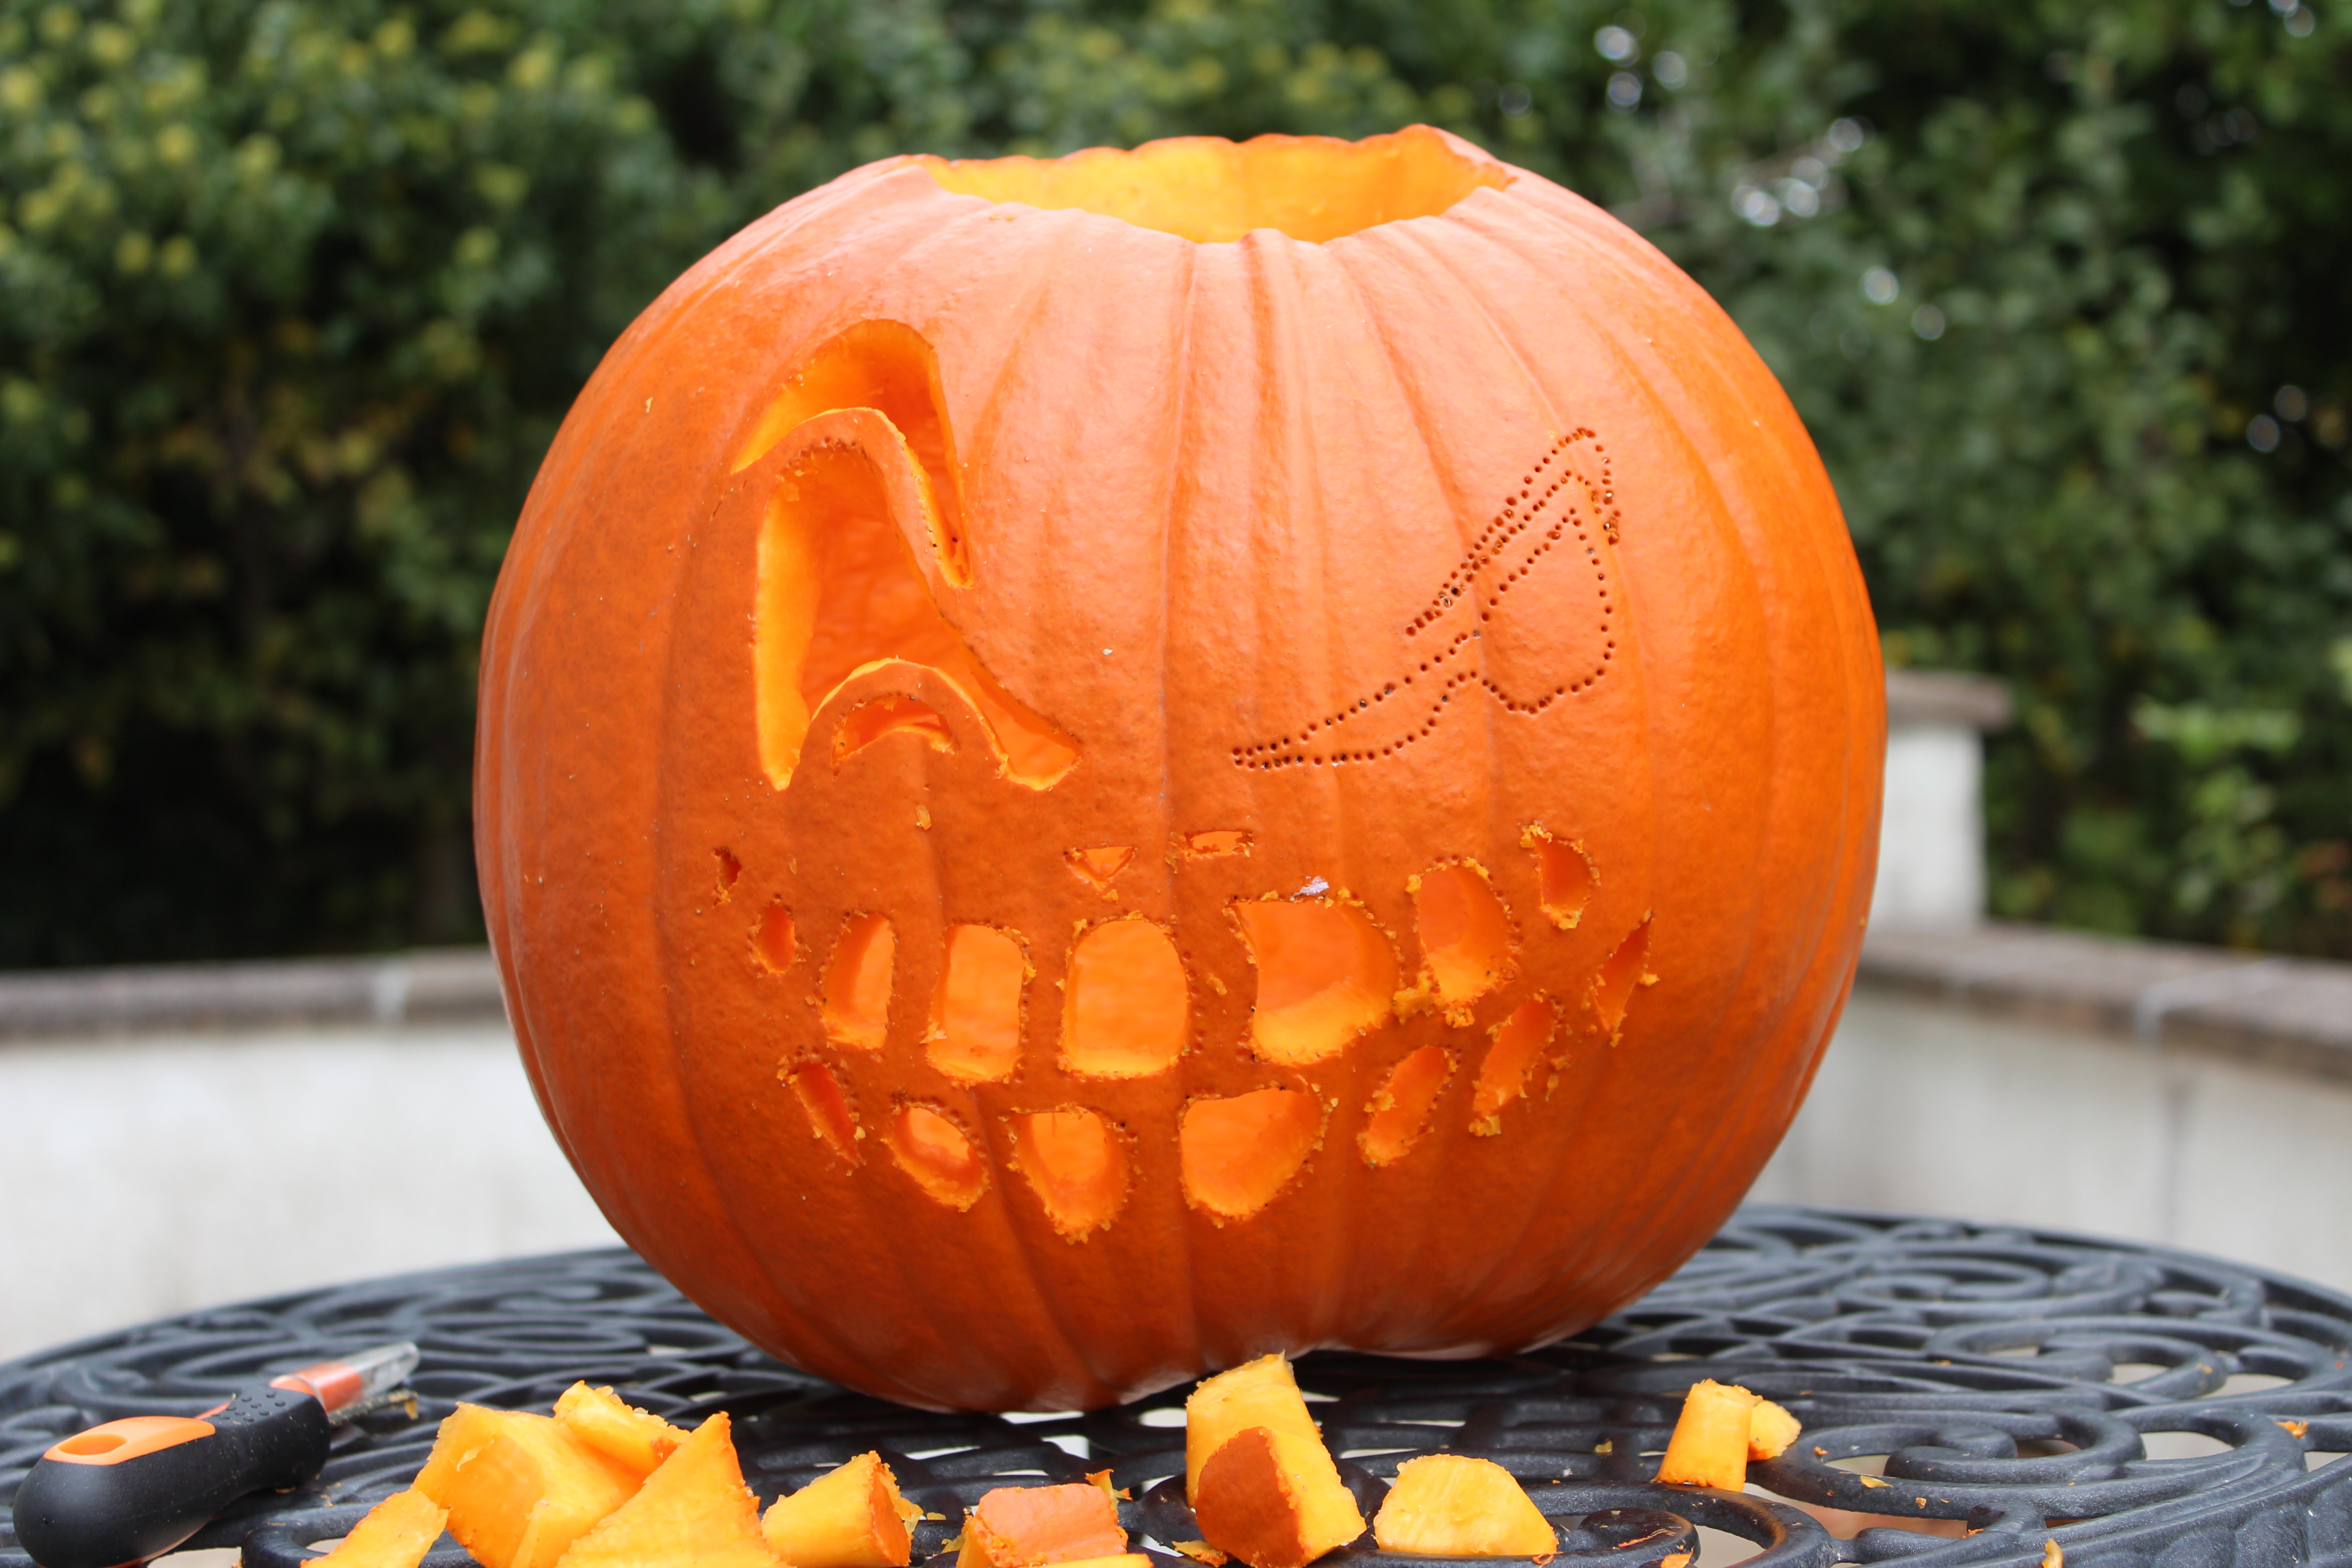 How do you carve a pumpkin? Use a sharp knife to cut the Jack O Lantern face